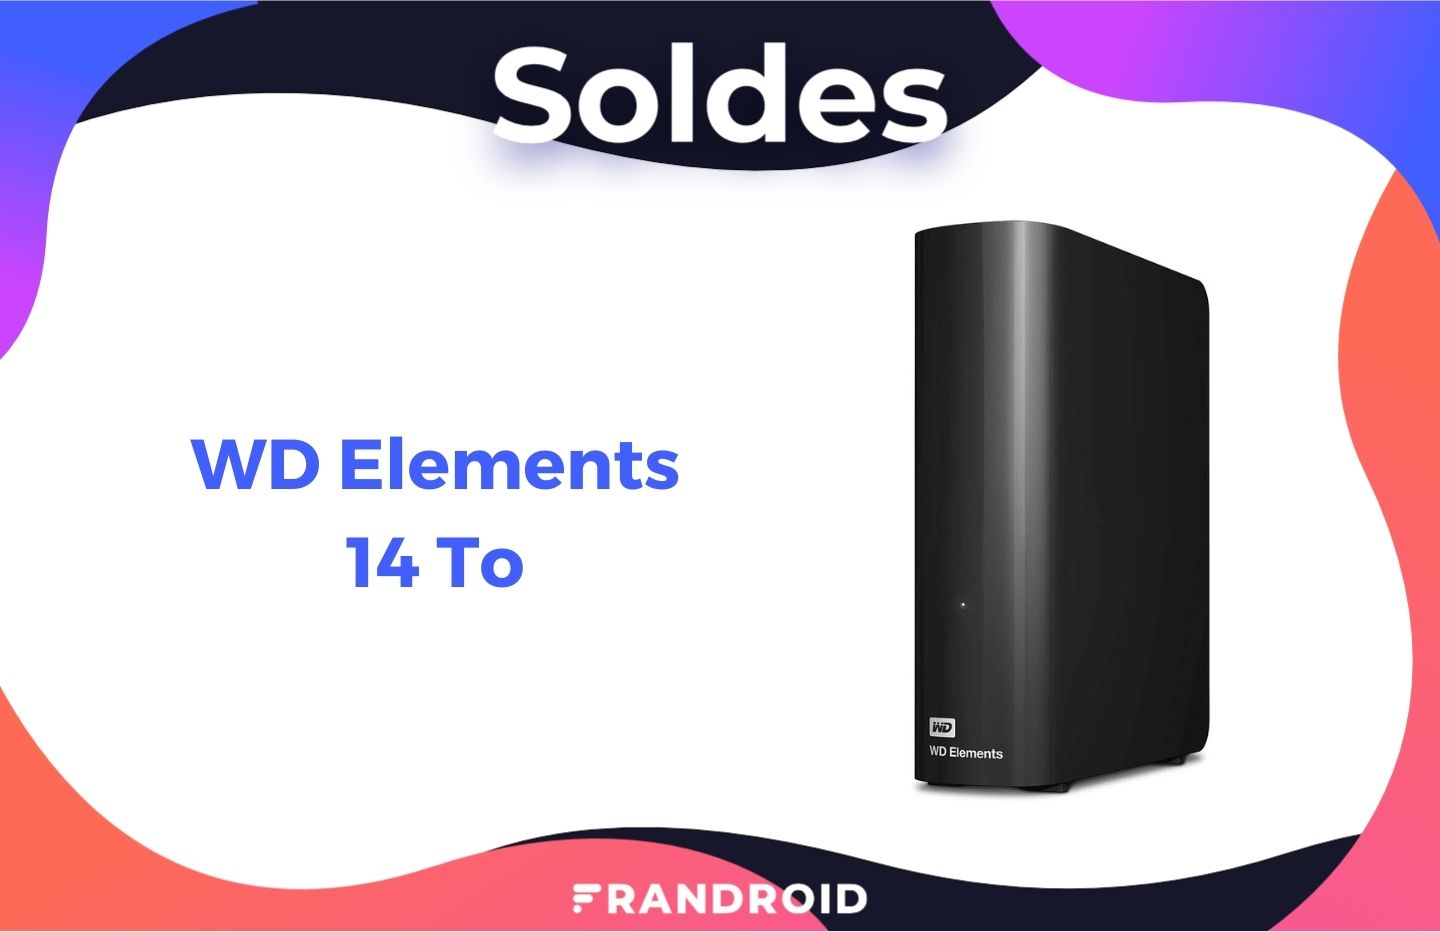 Moins de 100 € pour cet excellent disque dur portable WD Elements de 5 To !